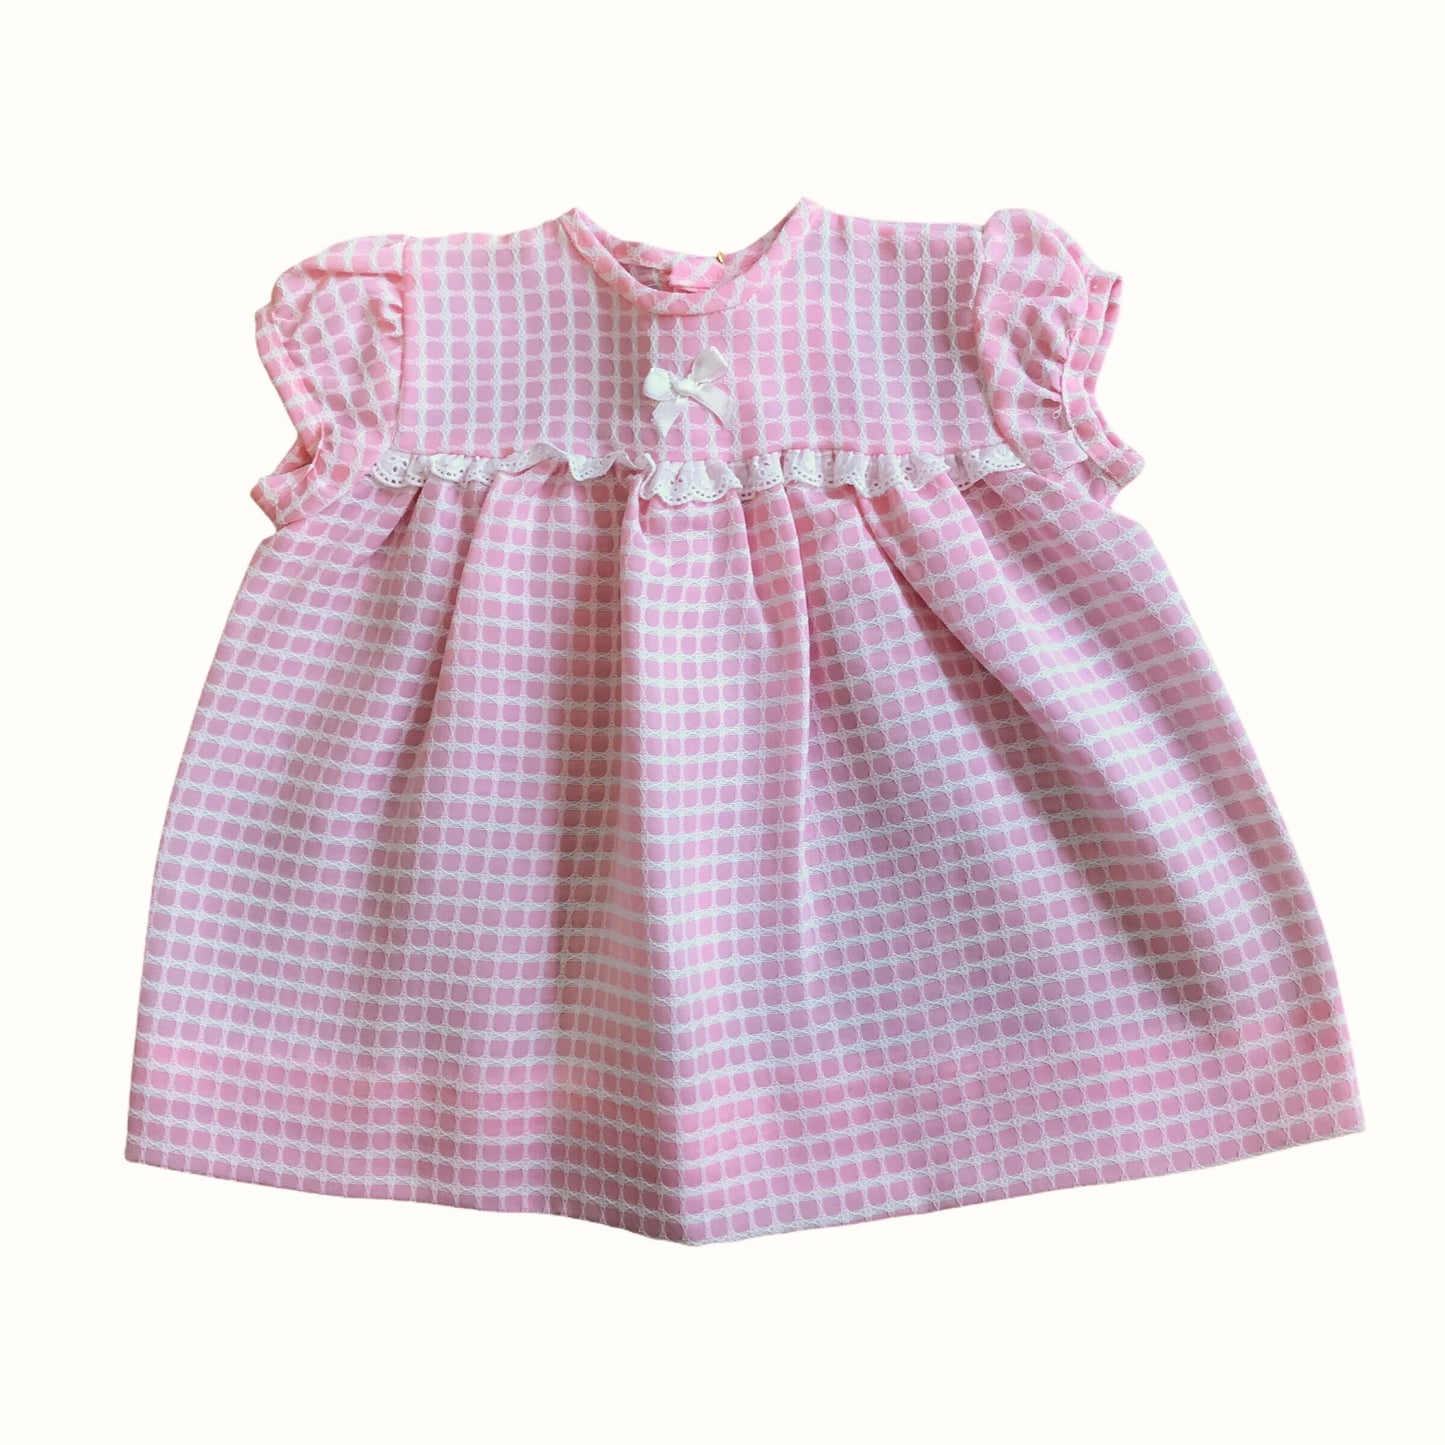 Vintage 60s Baby Pink Textured Dress British Made 6-9 Months